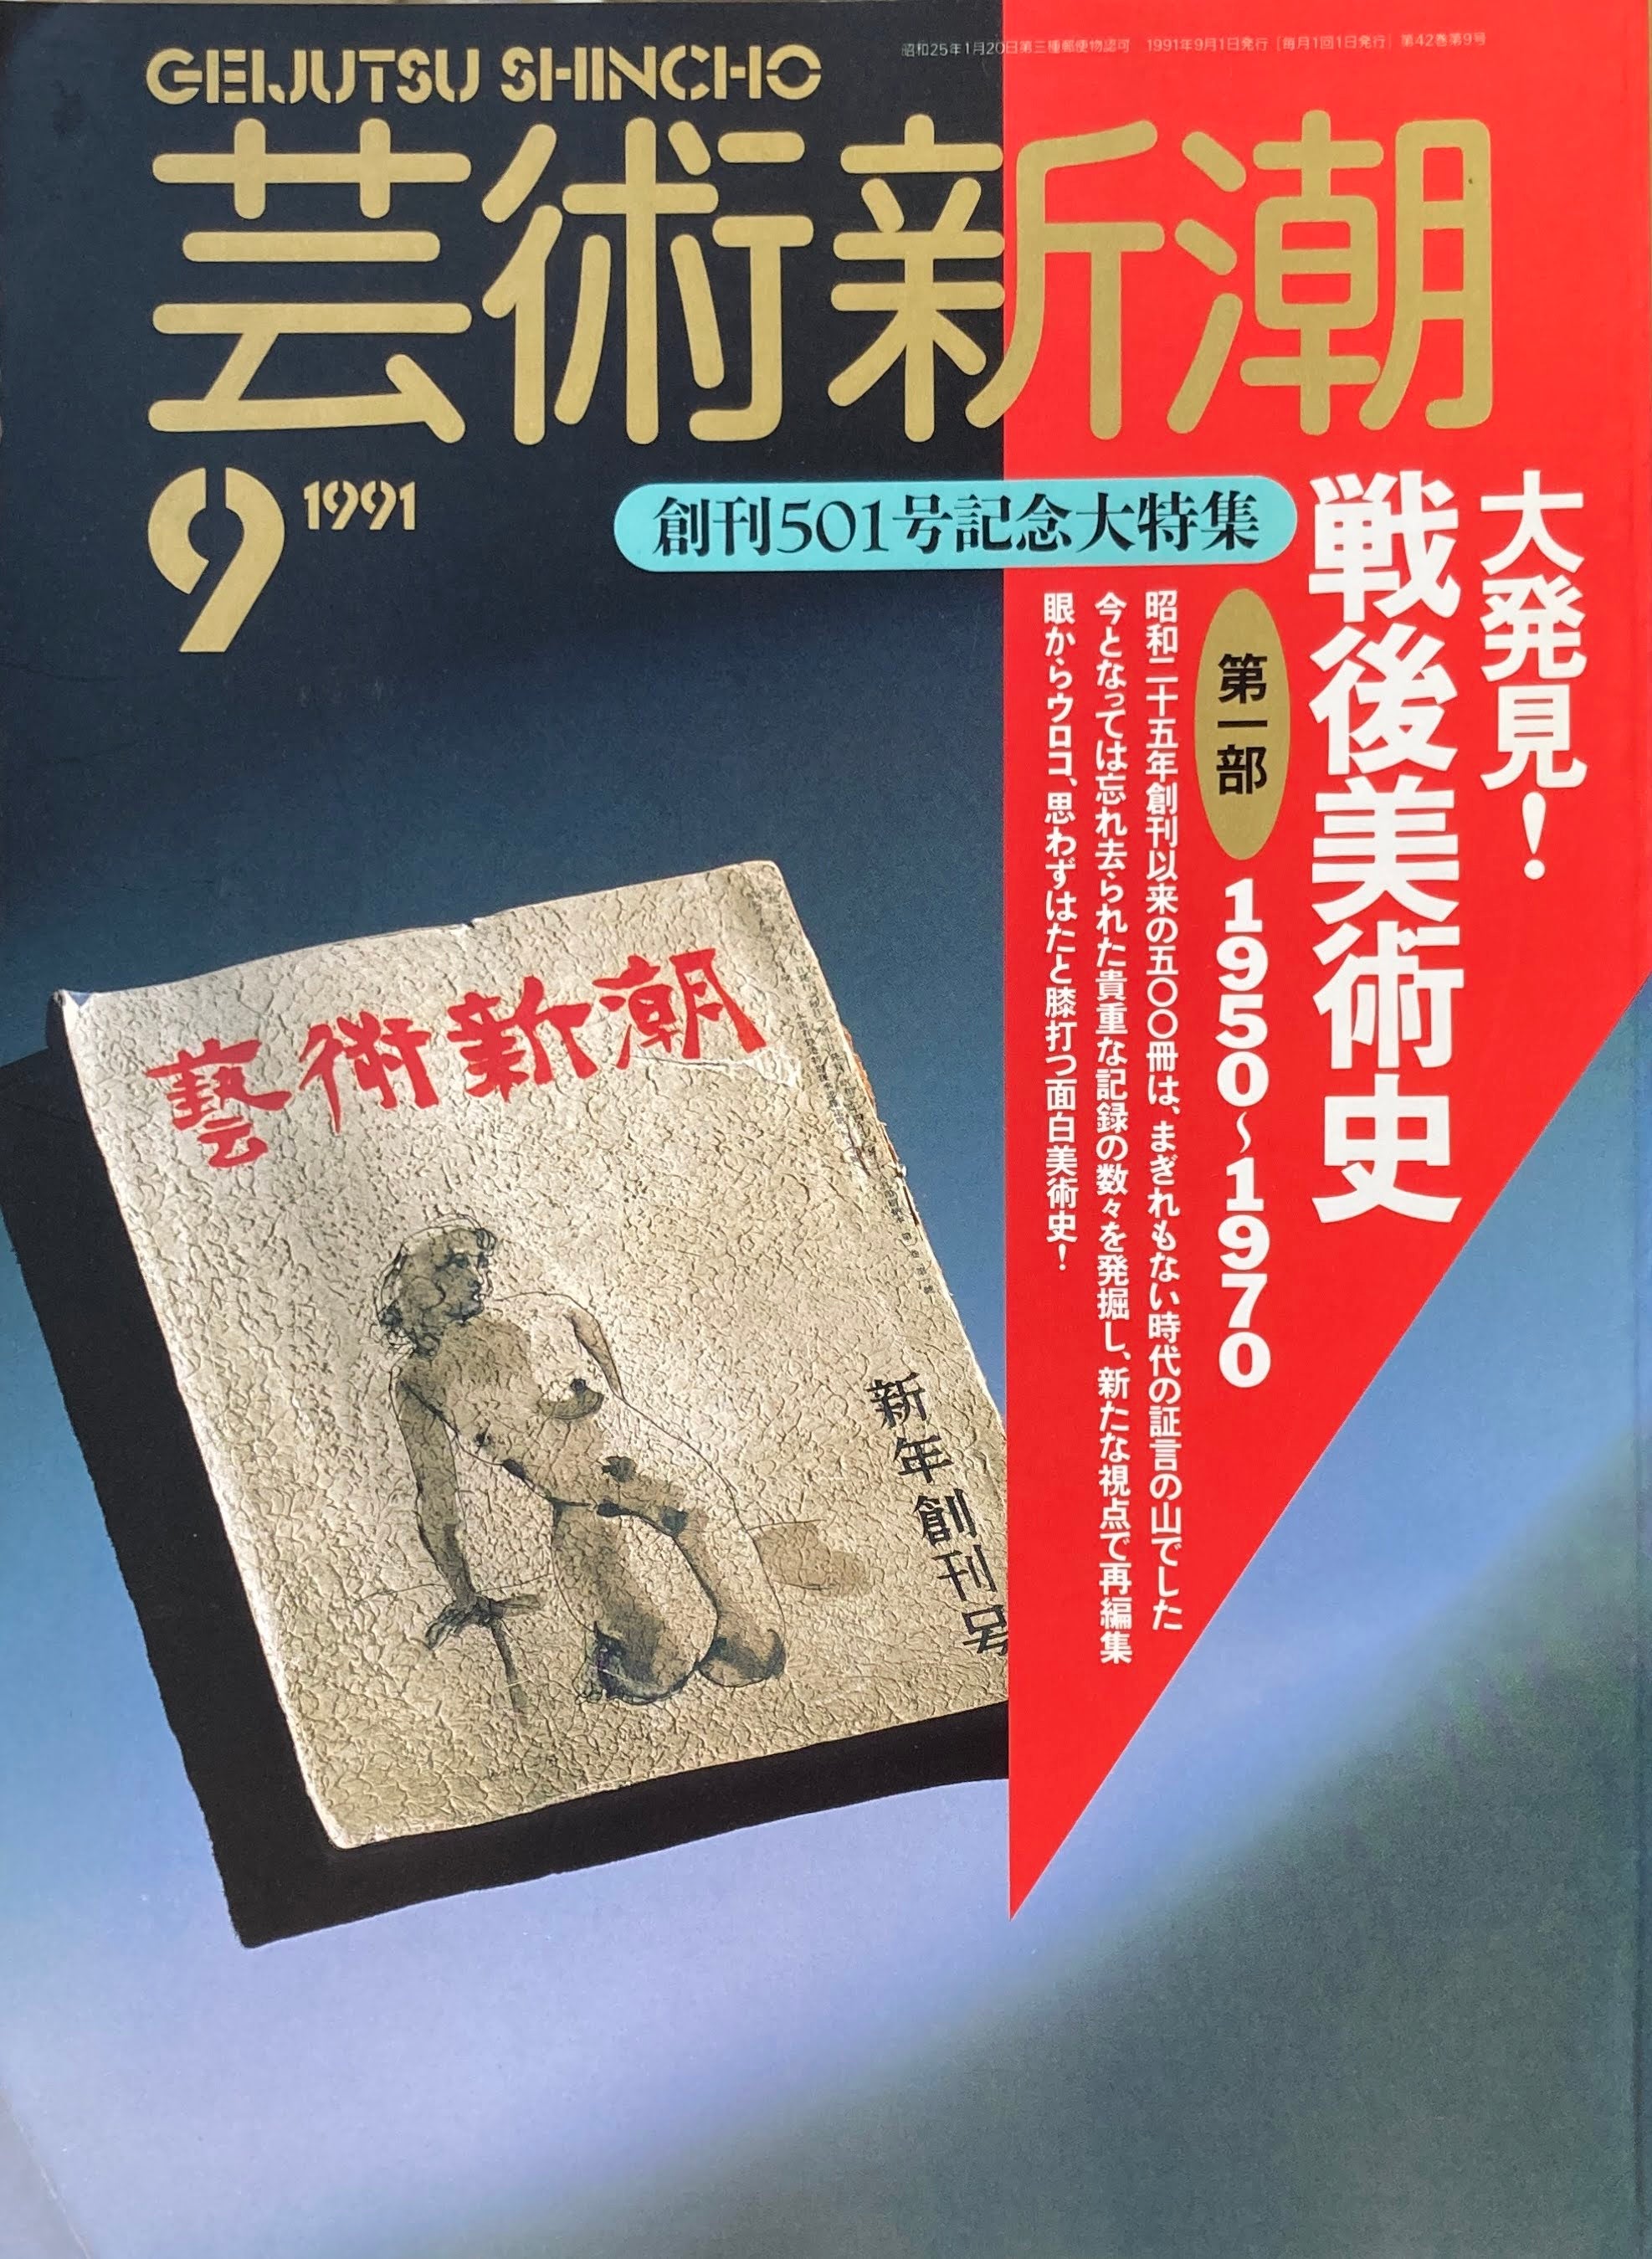 1950-1970　smokebooks　第一部　1991年9月号　501号　–　shop　芸術新潮　大発見！戦後美術史